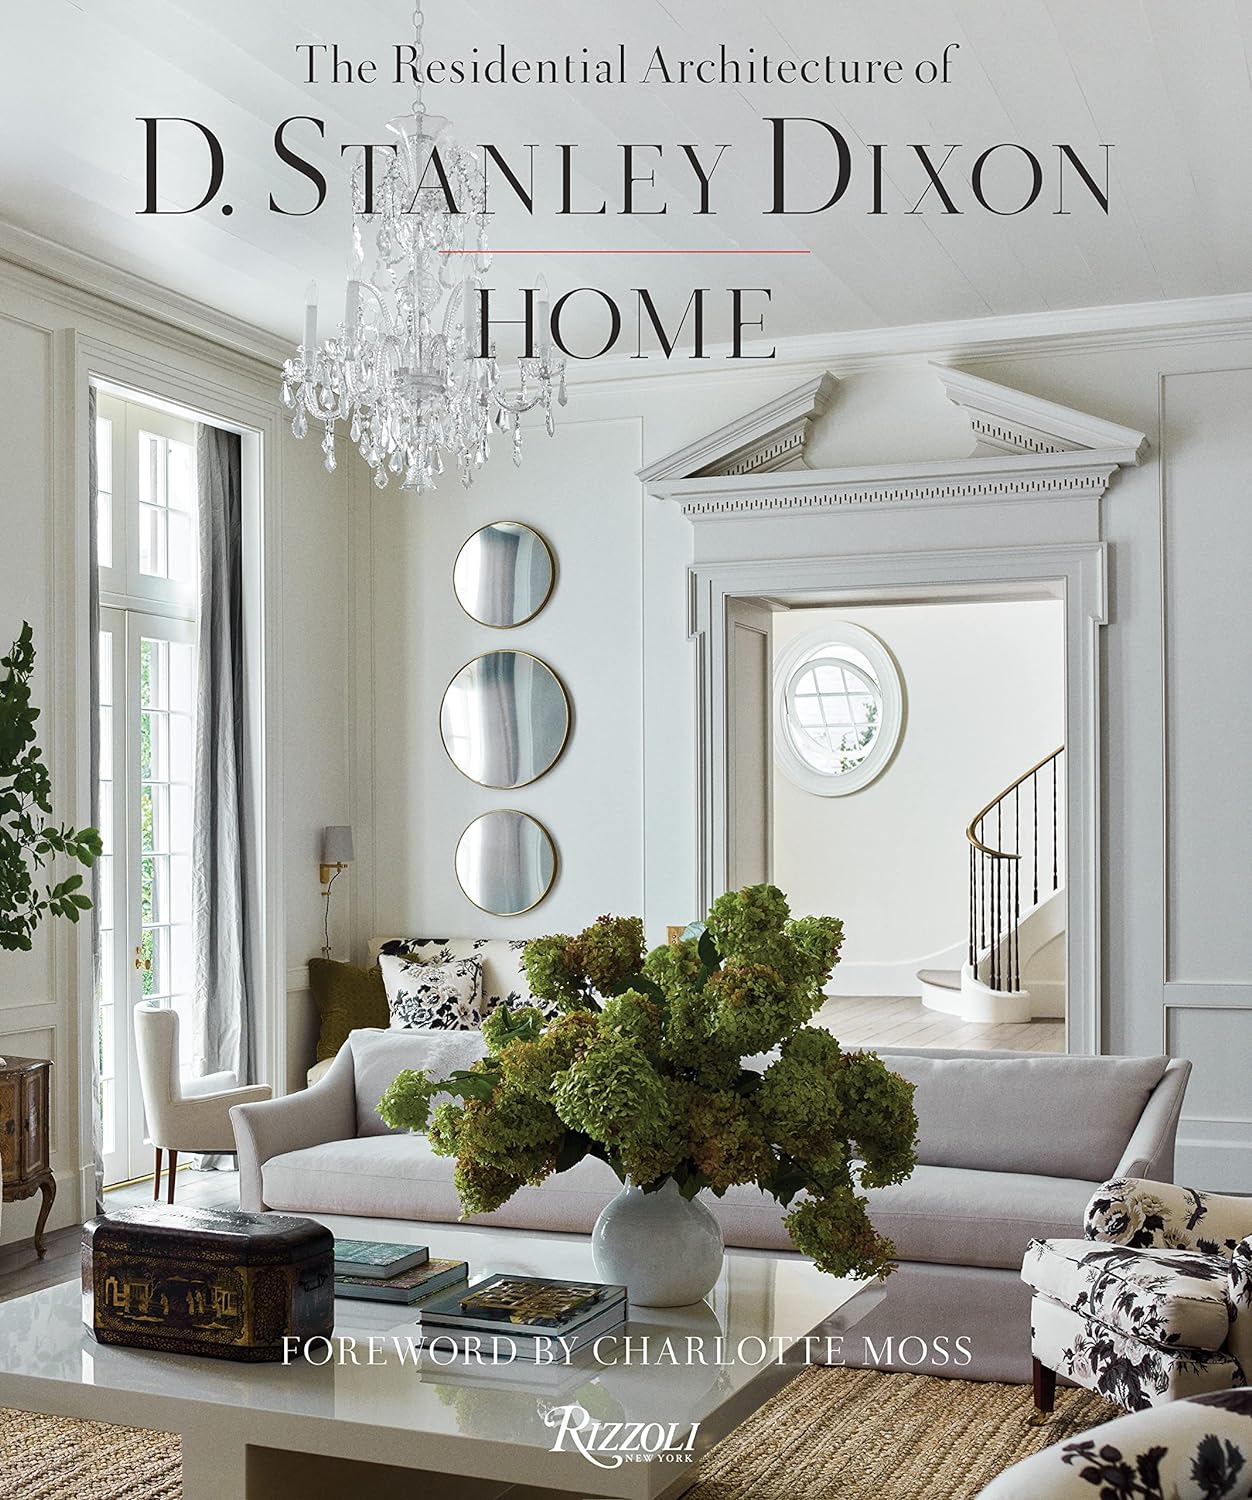 D. Stanley Dixon Home (Rizzoli, 2023) book cover. #architecturebook #residentialarchitecture #designbooks